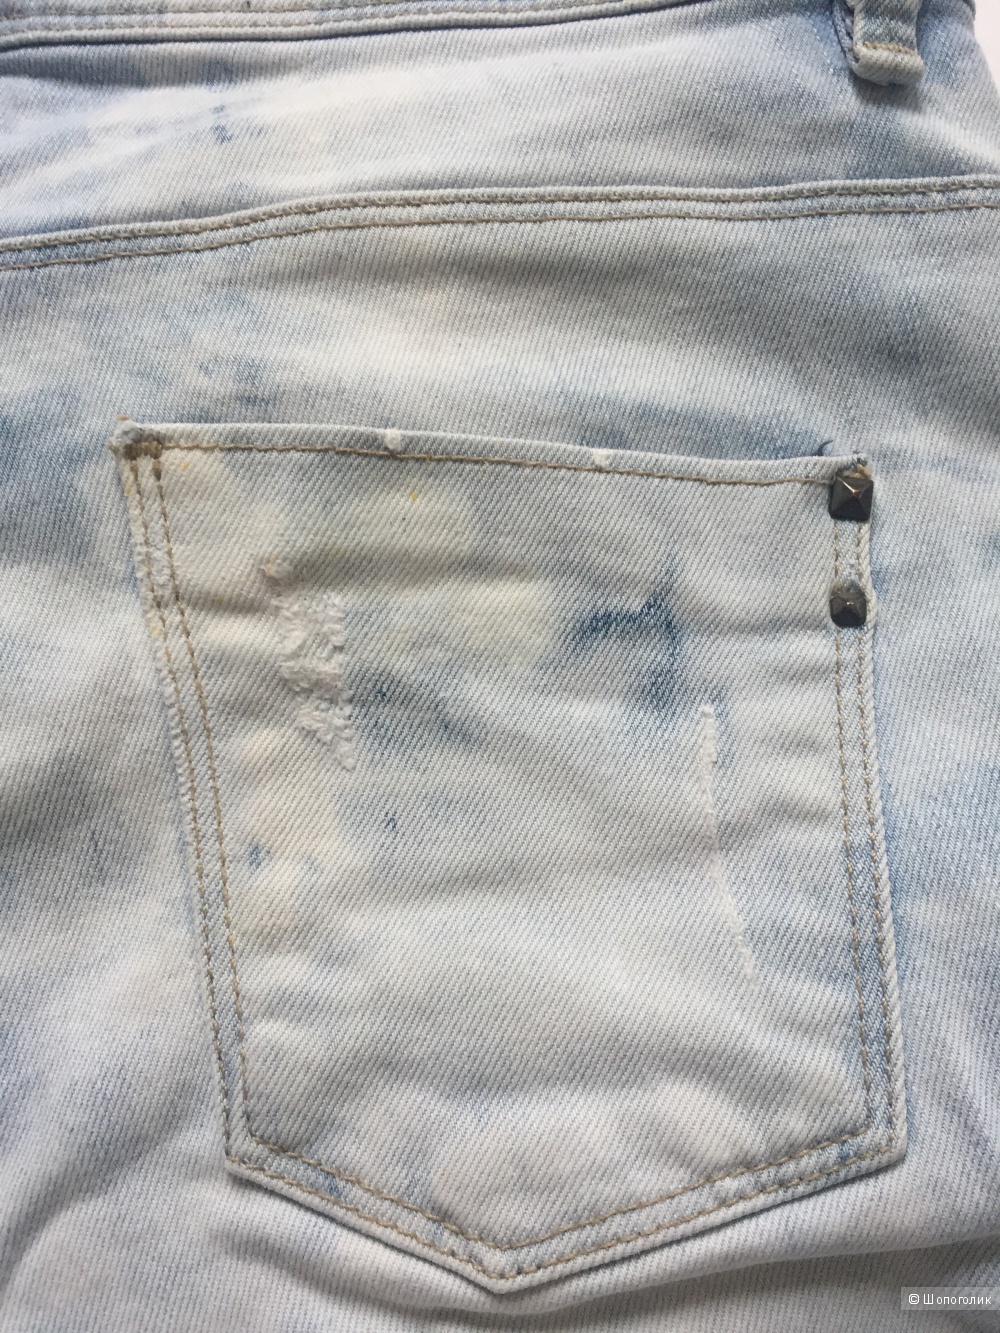 Сет свитер Goldi размер с, джинсы no name размер 42/44 и украшение цепь